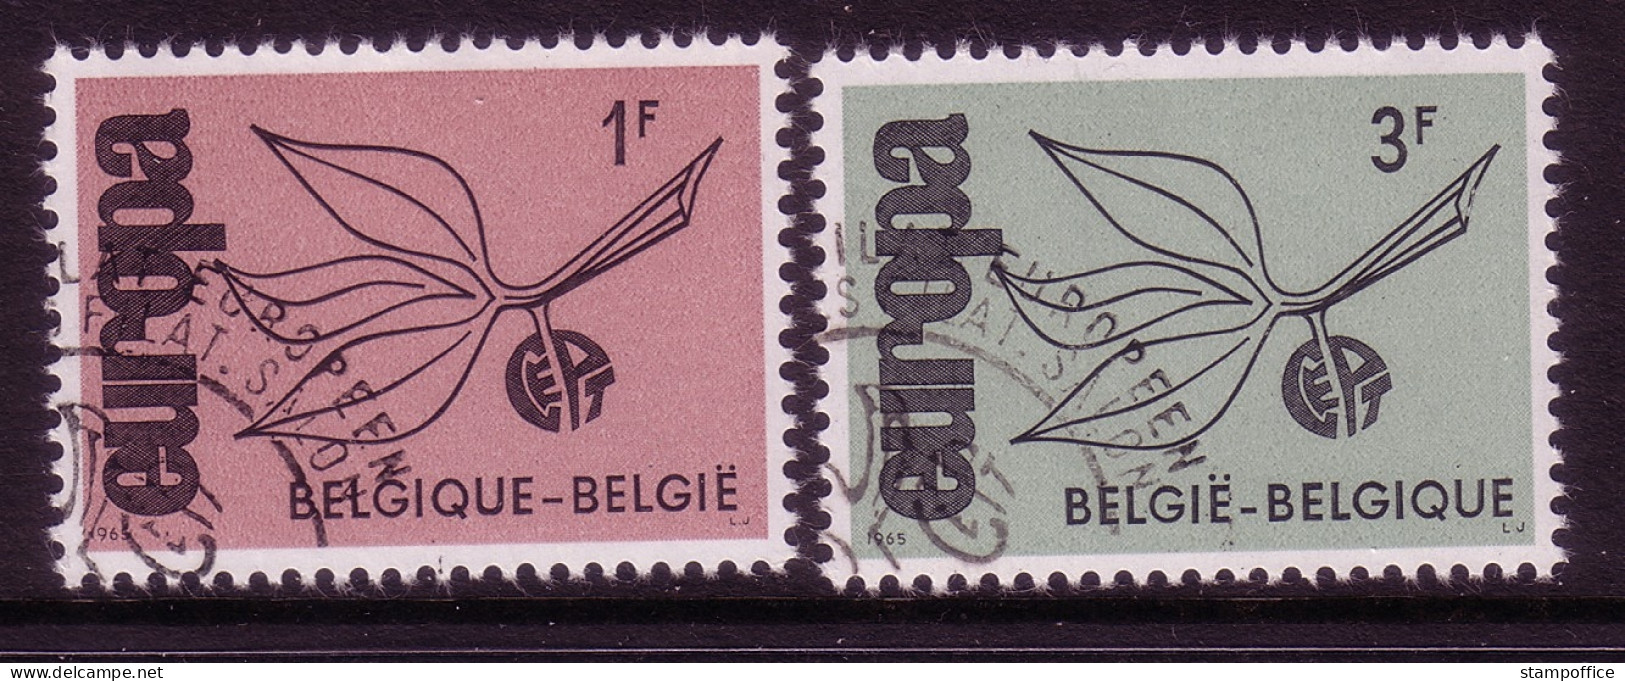 BELGIEN MI-NR. 1399-1400 O EUROPA 1965 - ZWEIG - 1965